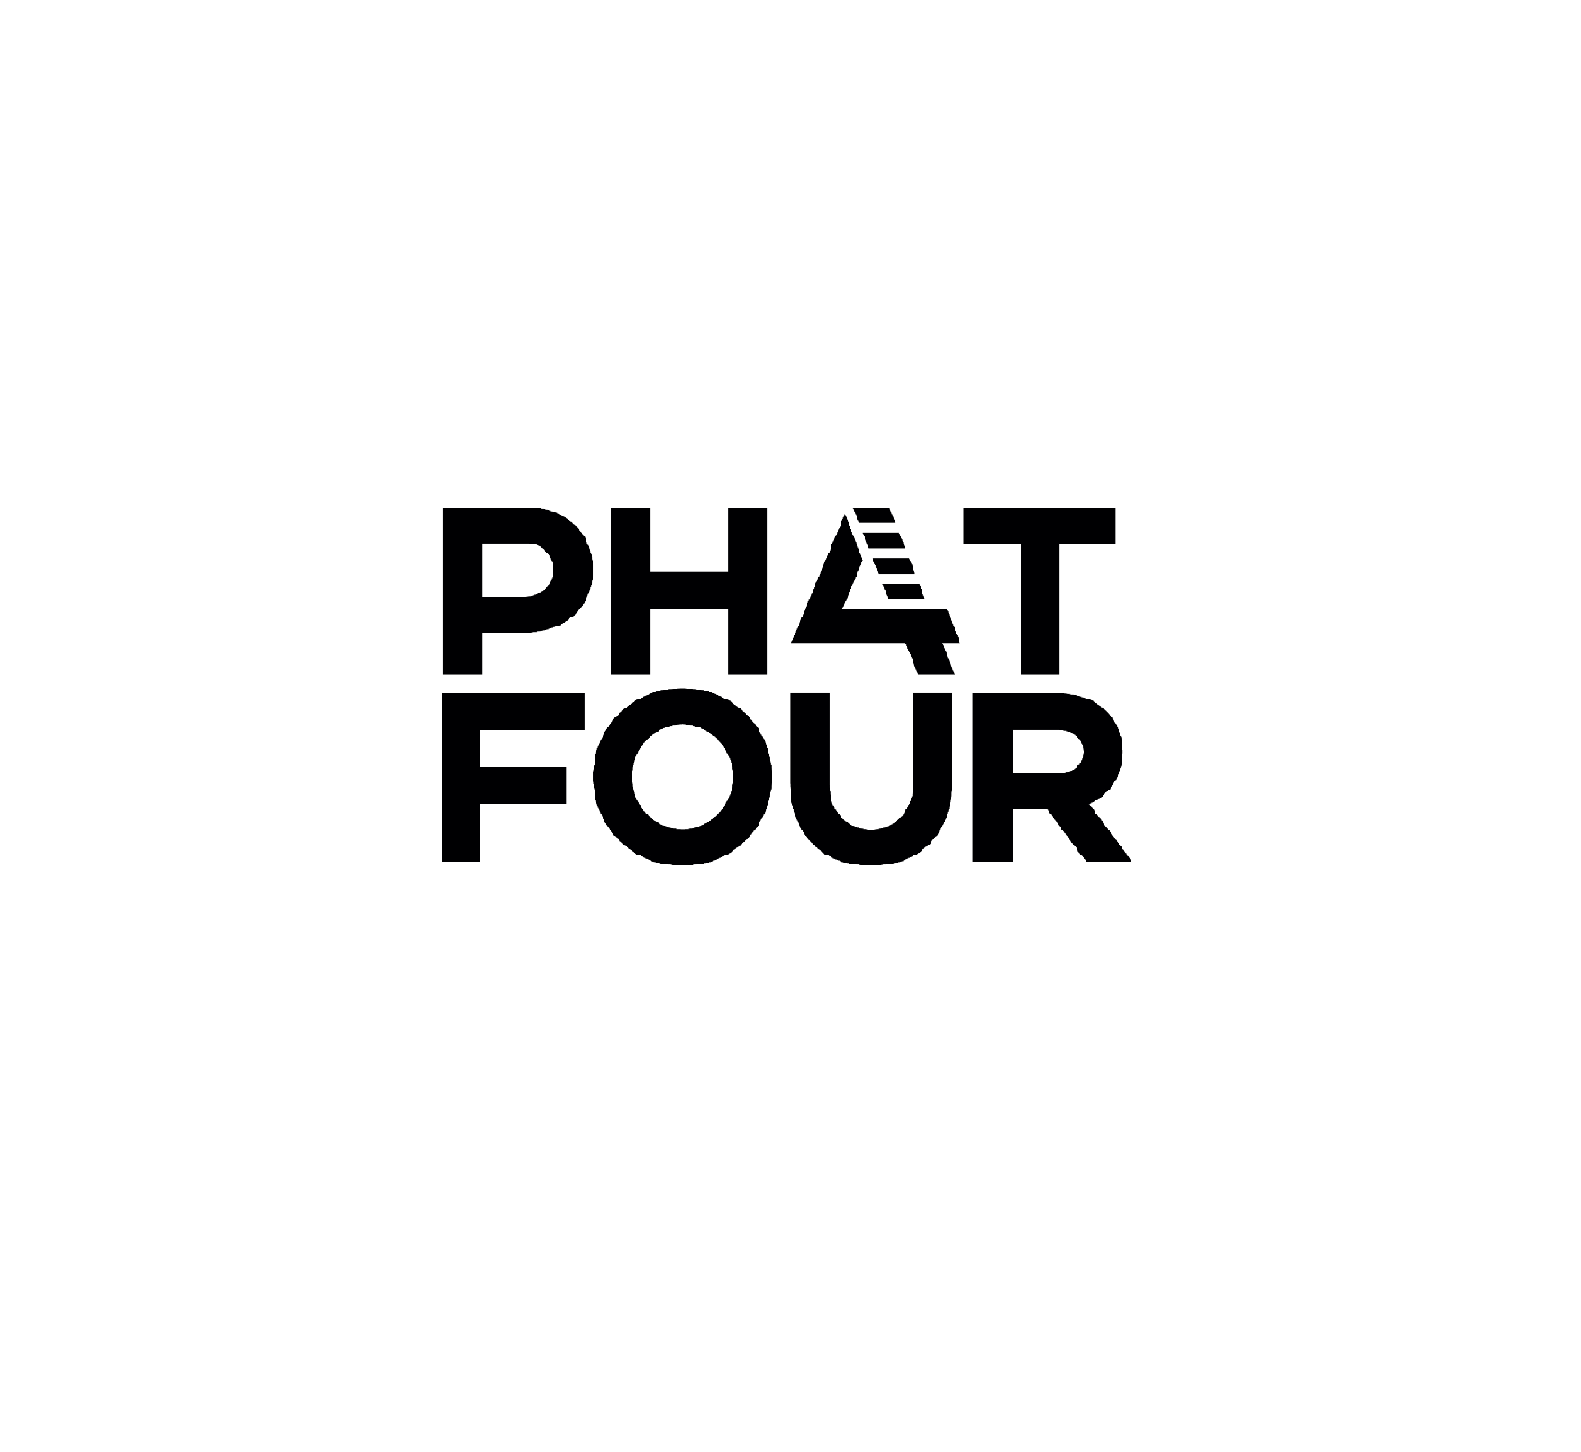 Phatfour